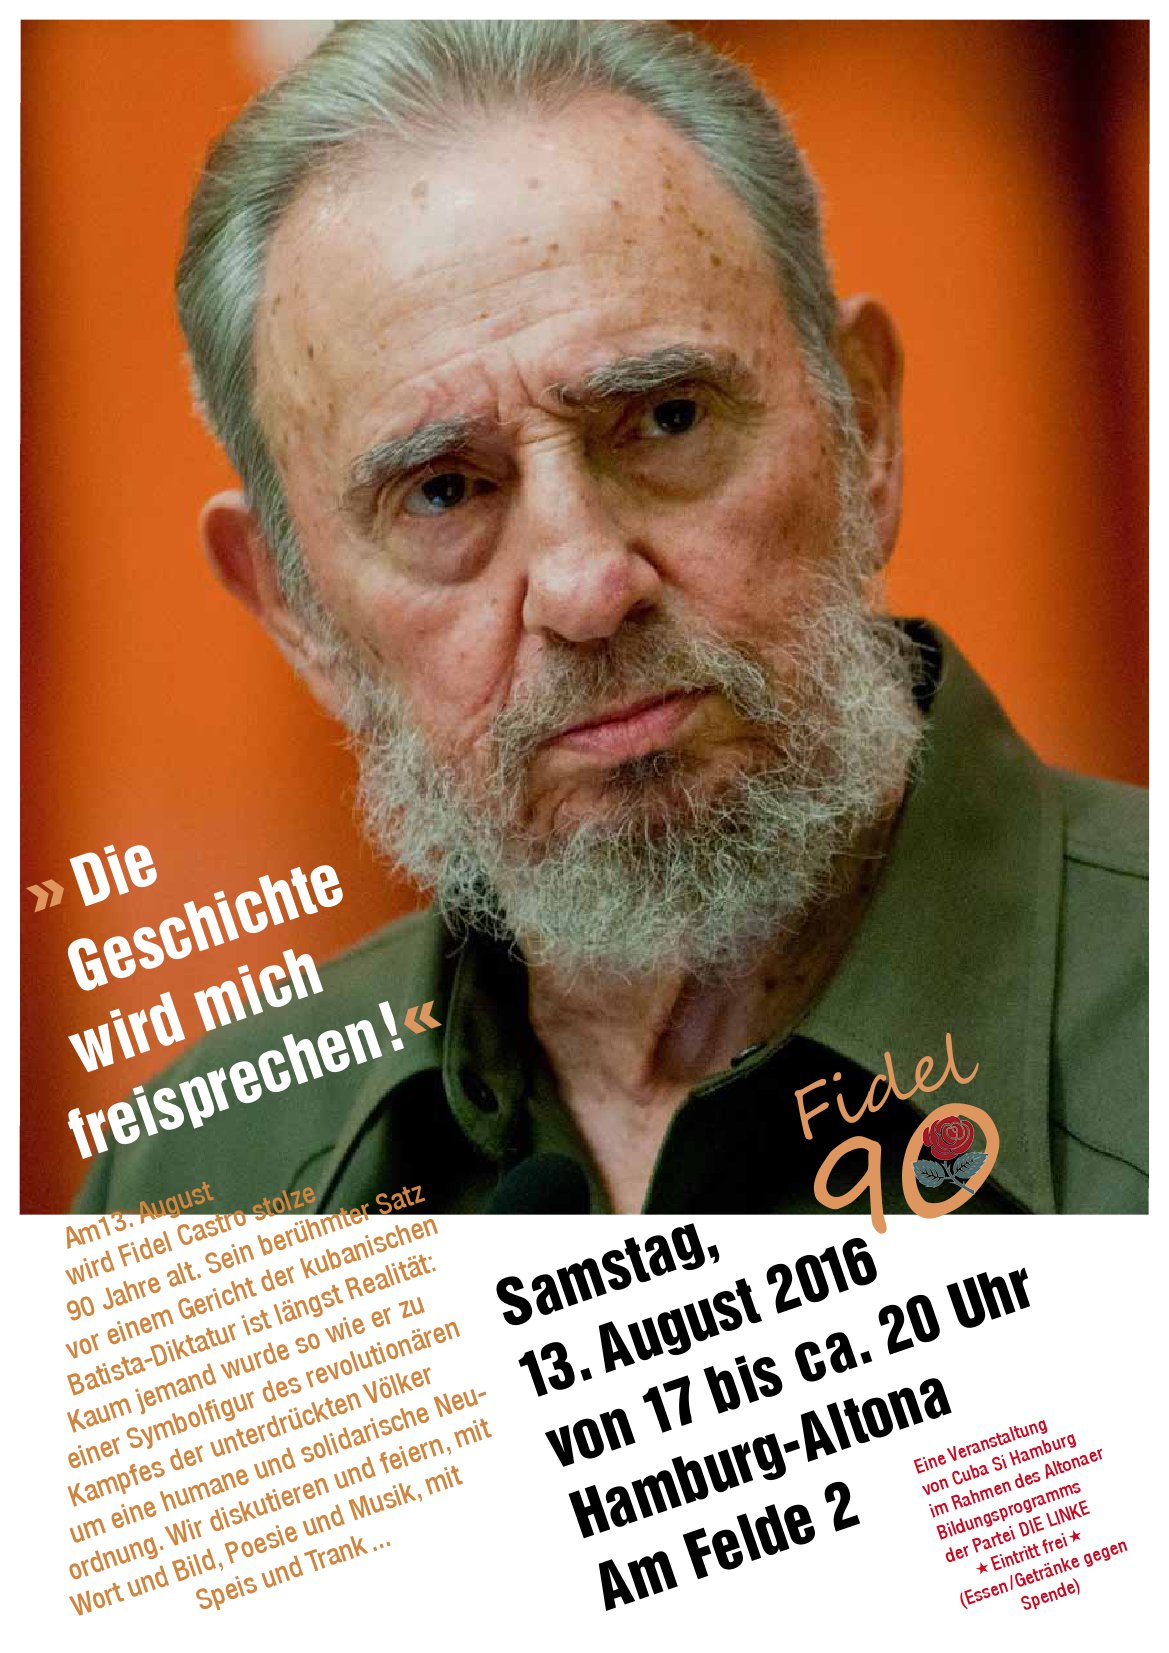 Fidel Castro wird 90 Jahre alt - Geburtstagsfeier in Hamburg